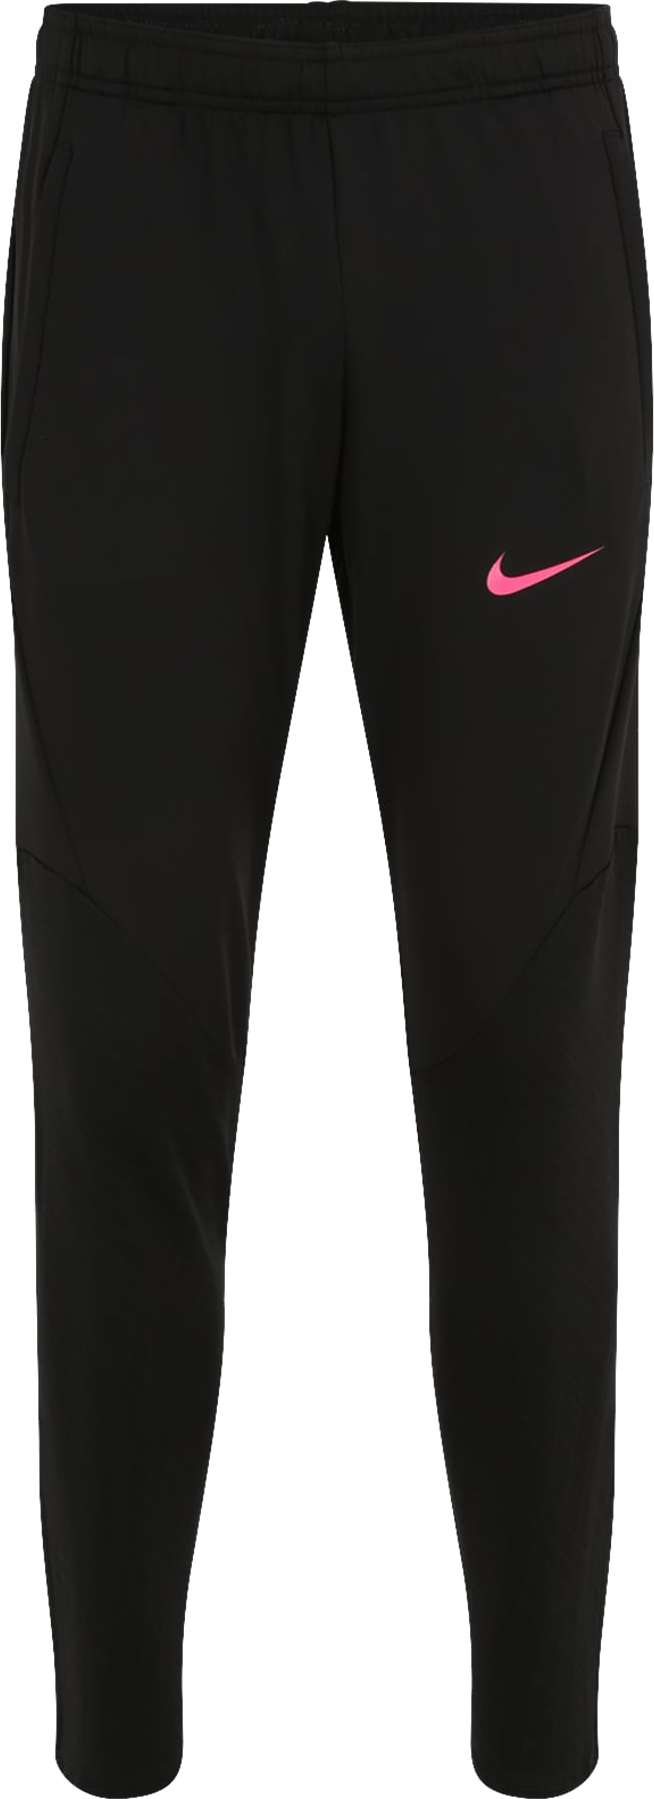 NIKE Sportovní kalhoty 'Strike' pink / černá